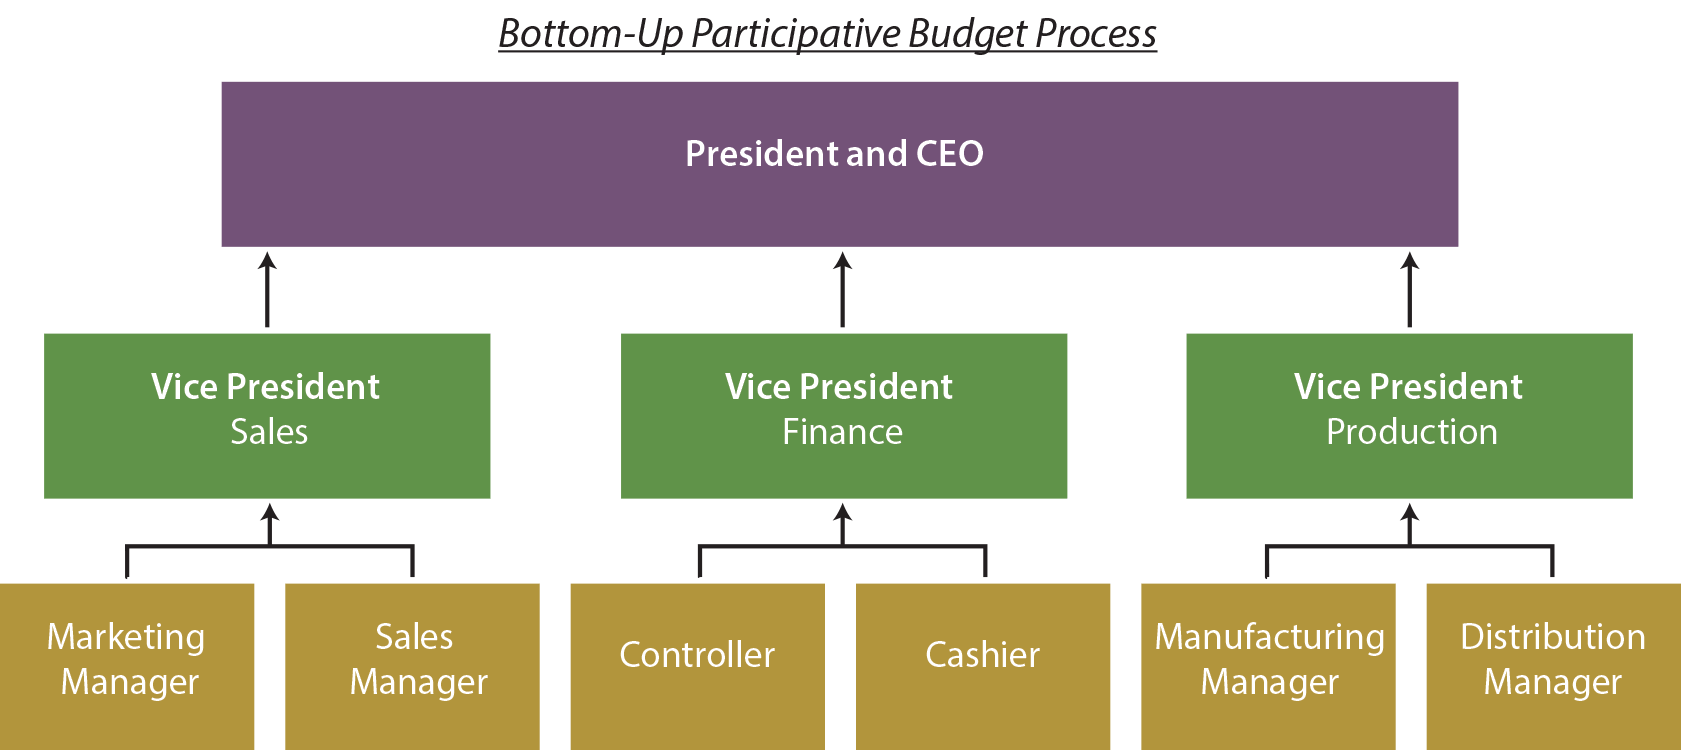 Bottom-Up Budget Process Diagram